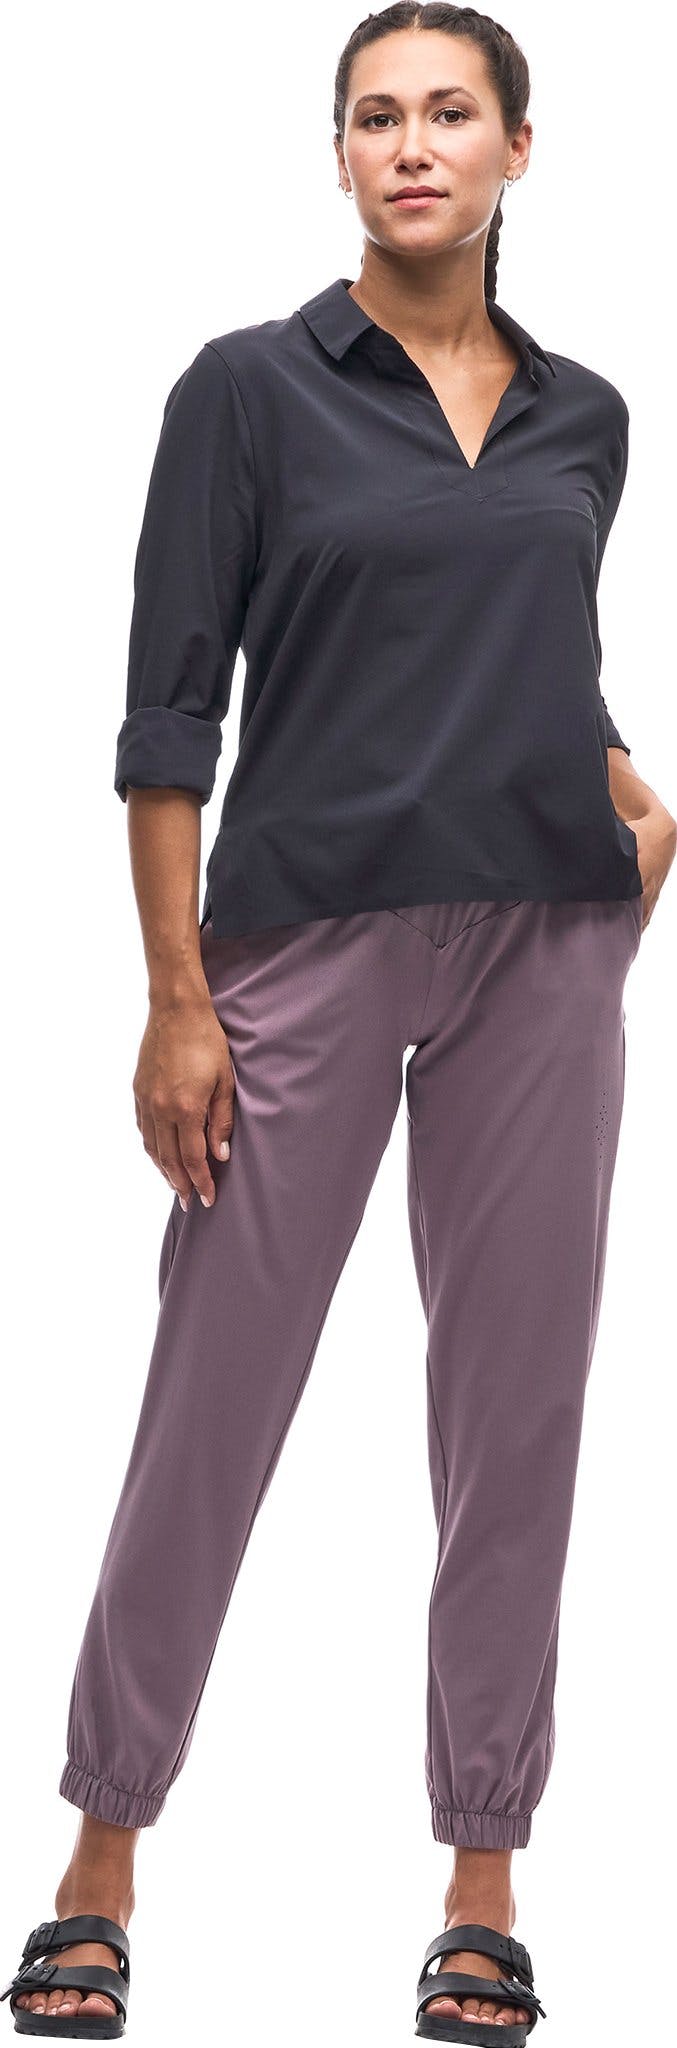 Numéro de l'image de la galerie de produits 1 pour le produit Pantalon de jogging taille régulière Lastik - Femme